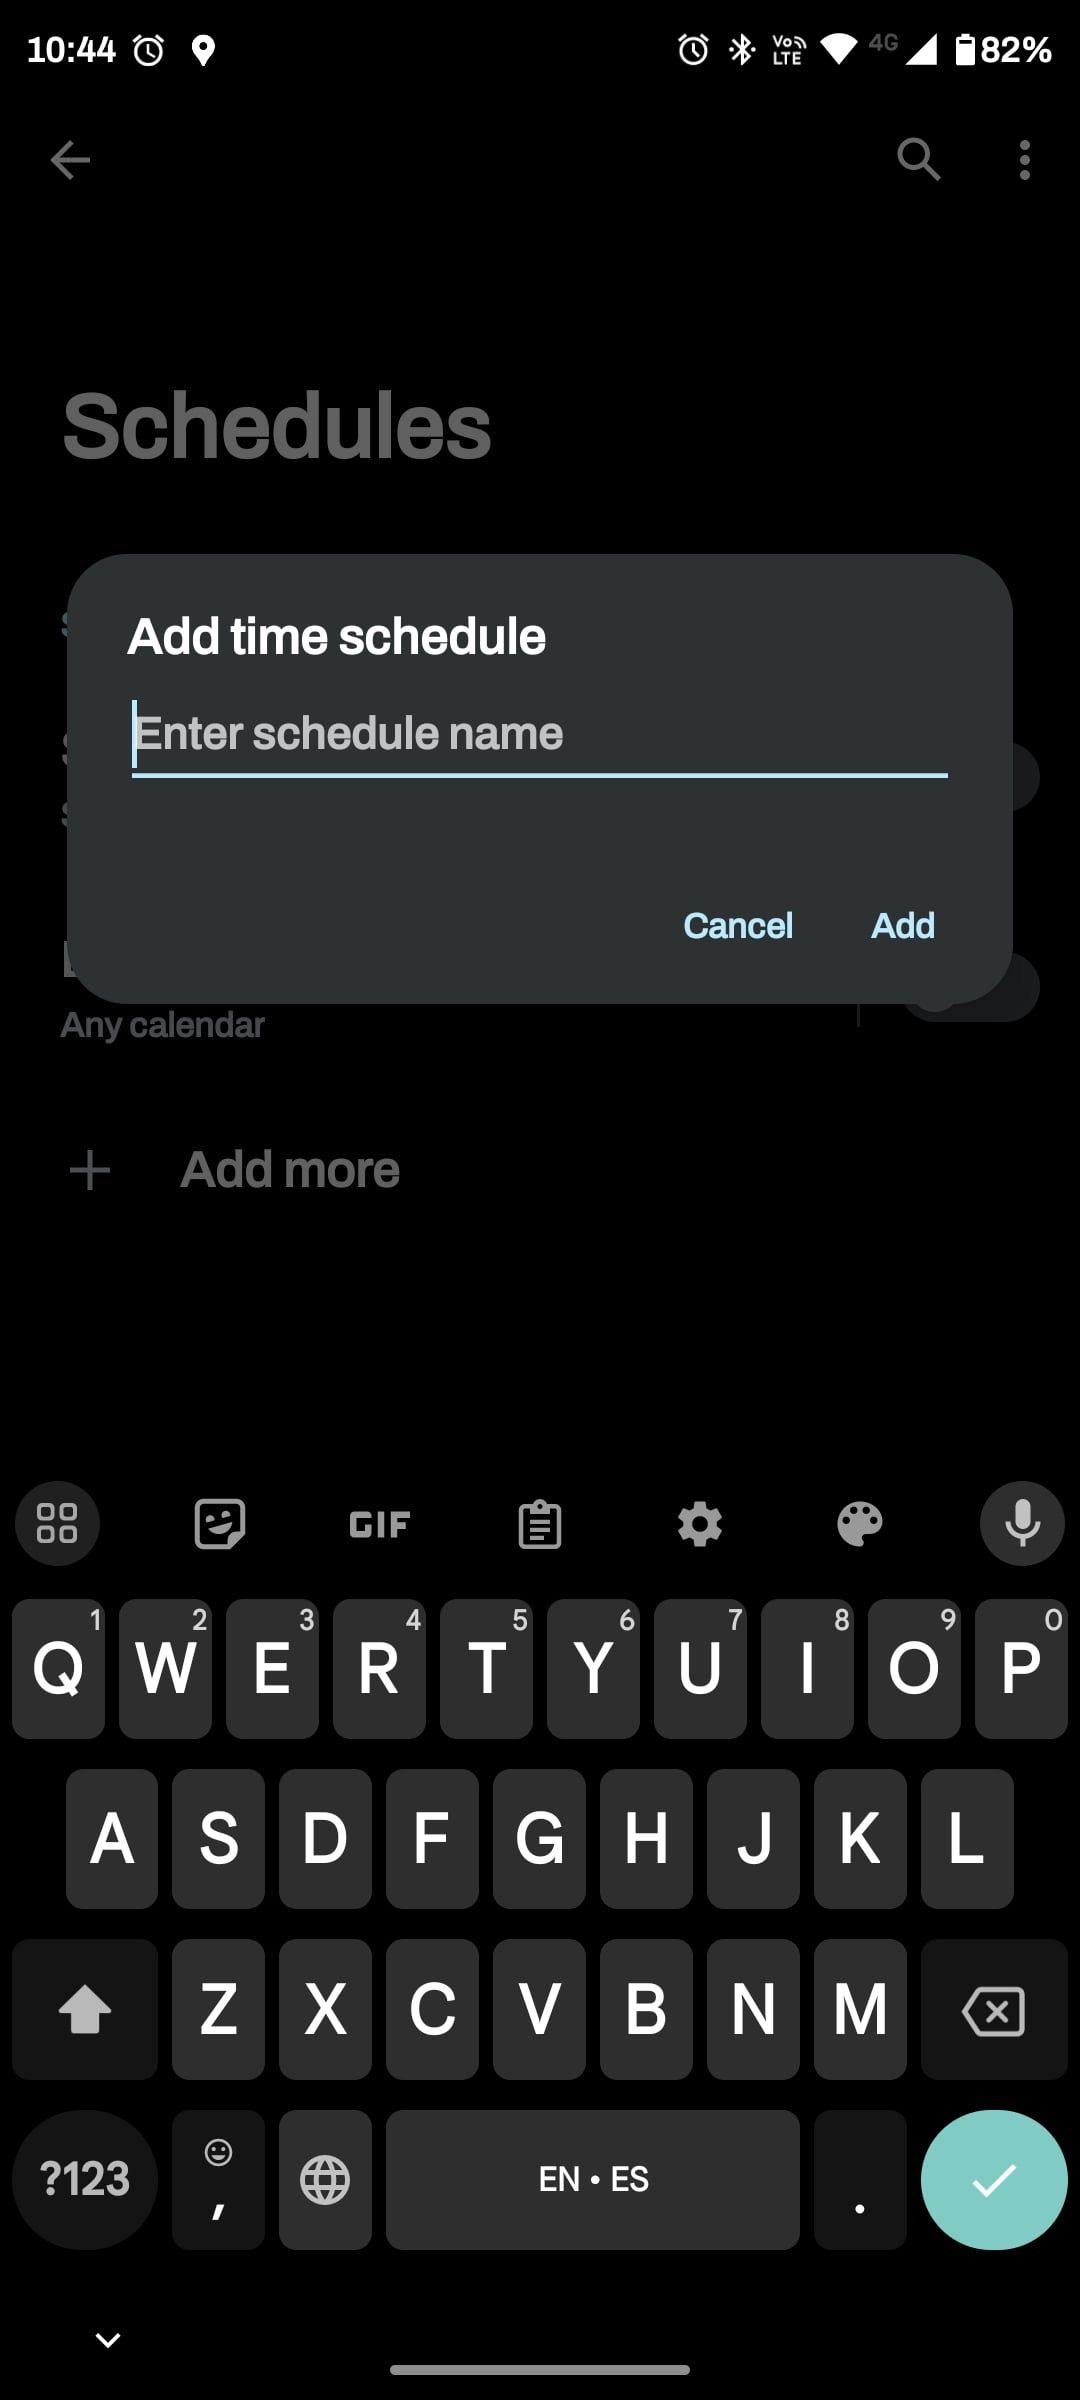 Edit schedule name in Schedule menu